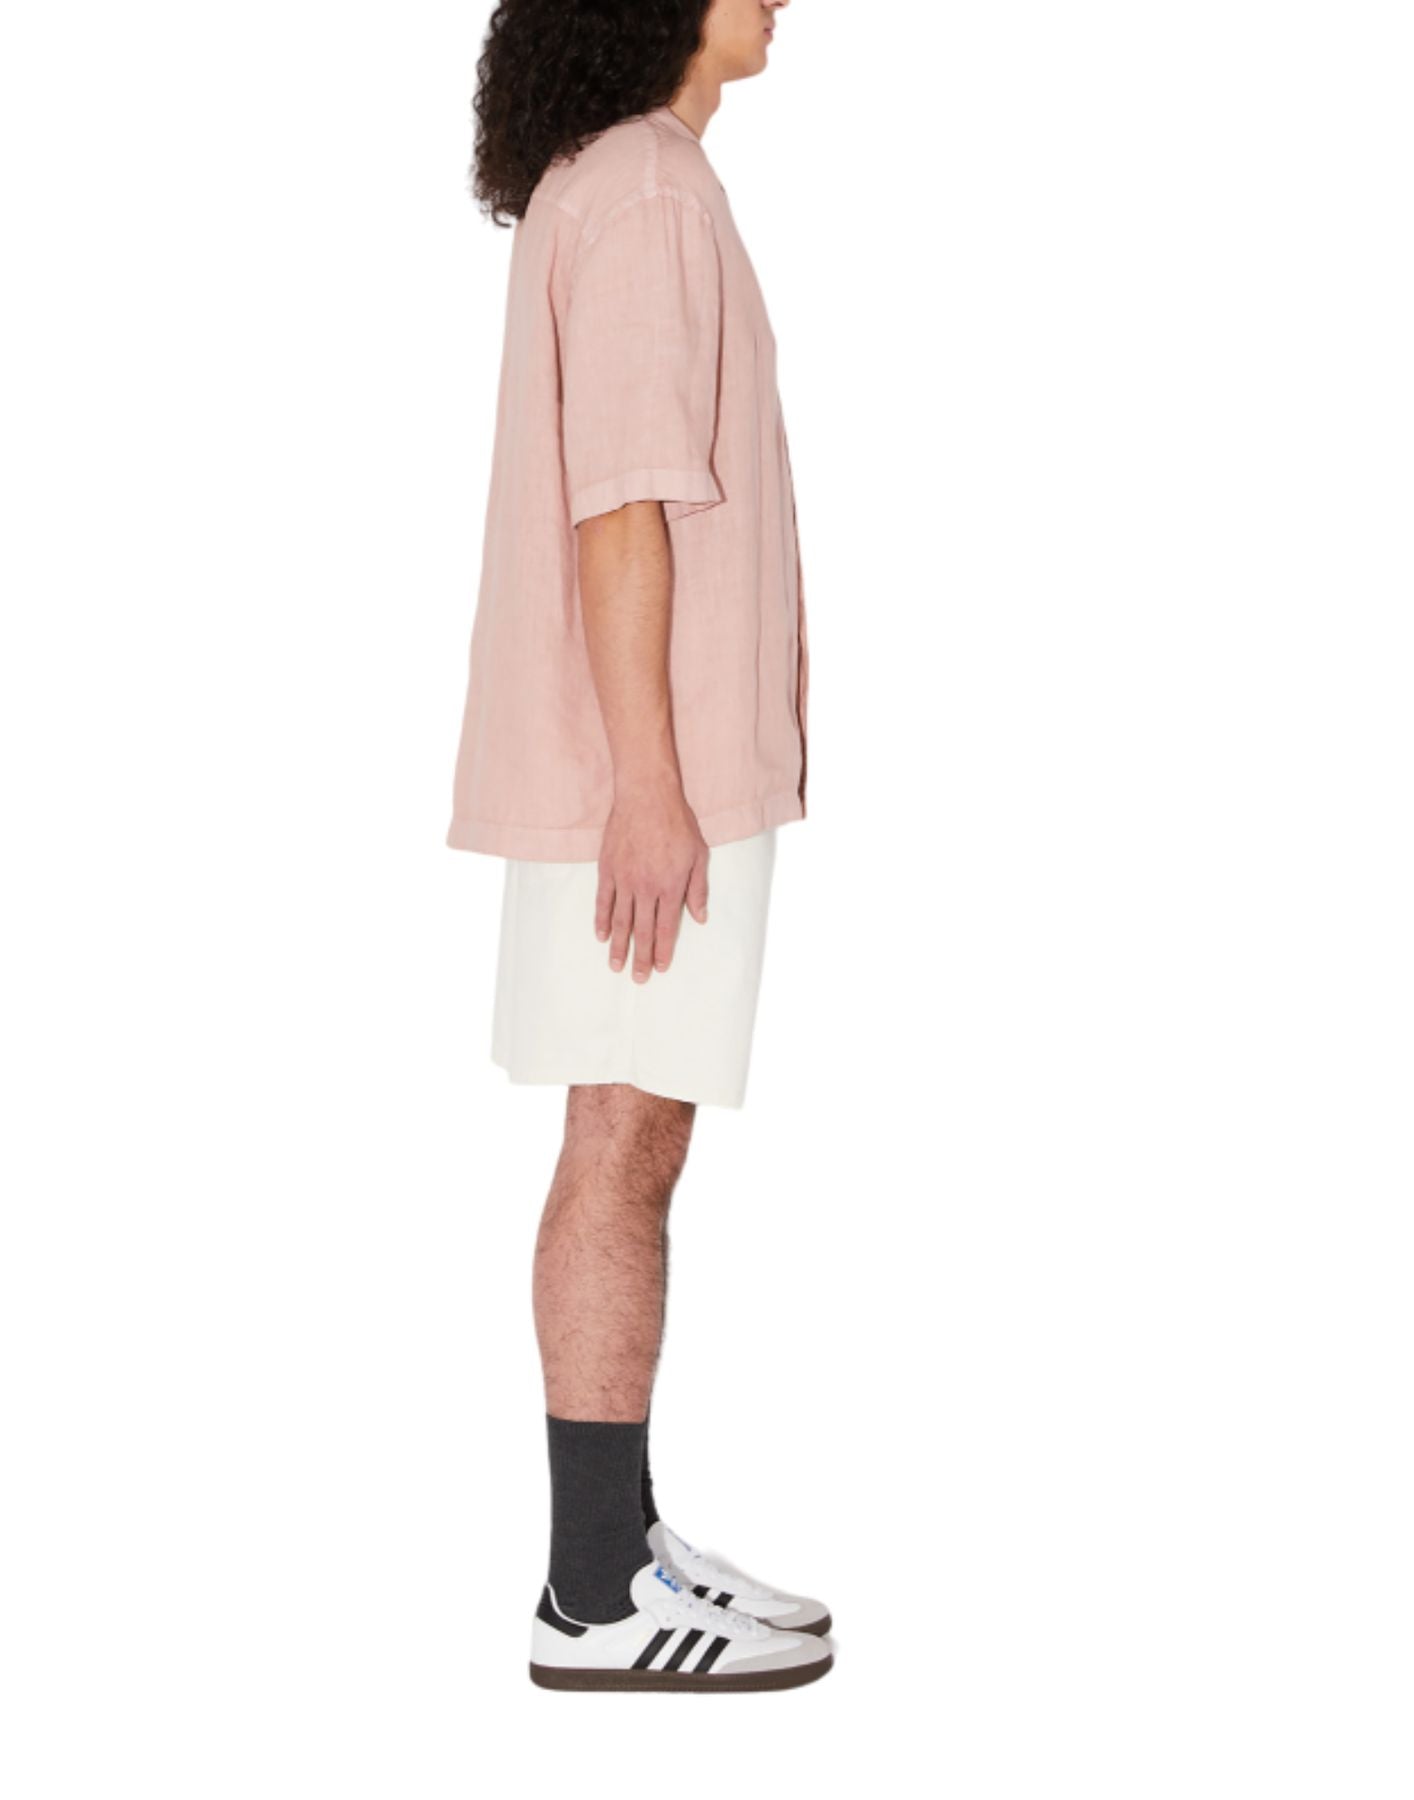 셔츠 AMU110PA220569 회색 분홍색 Amish